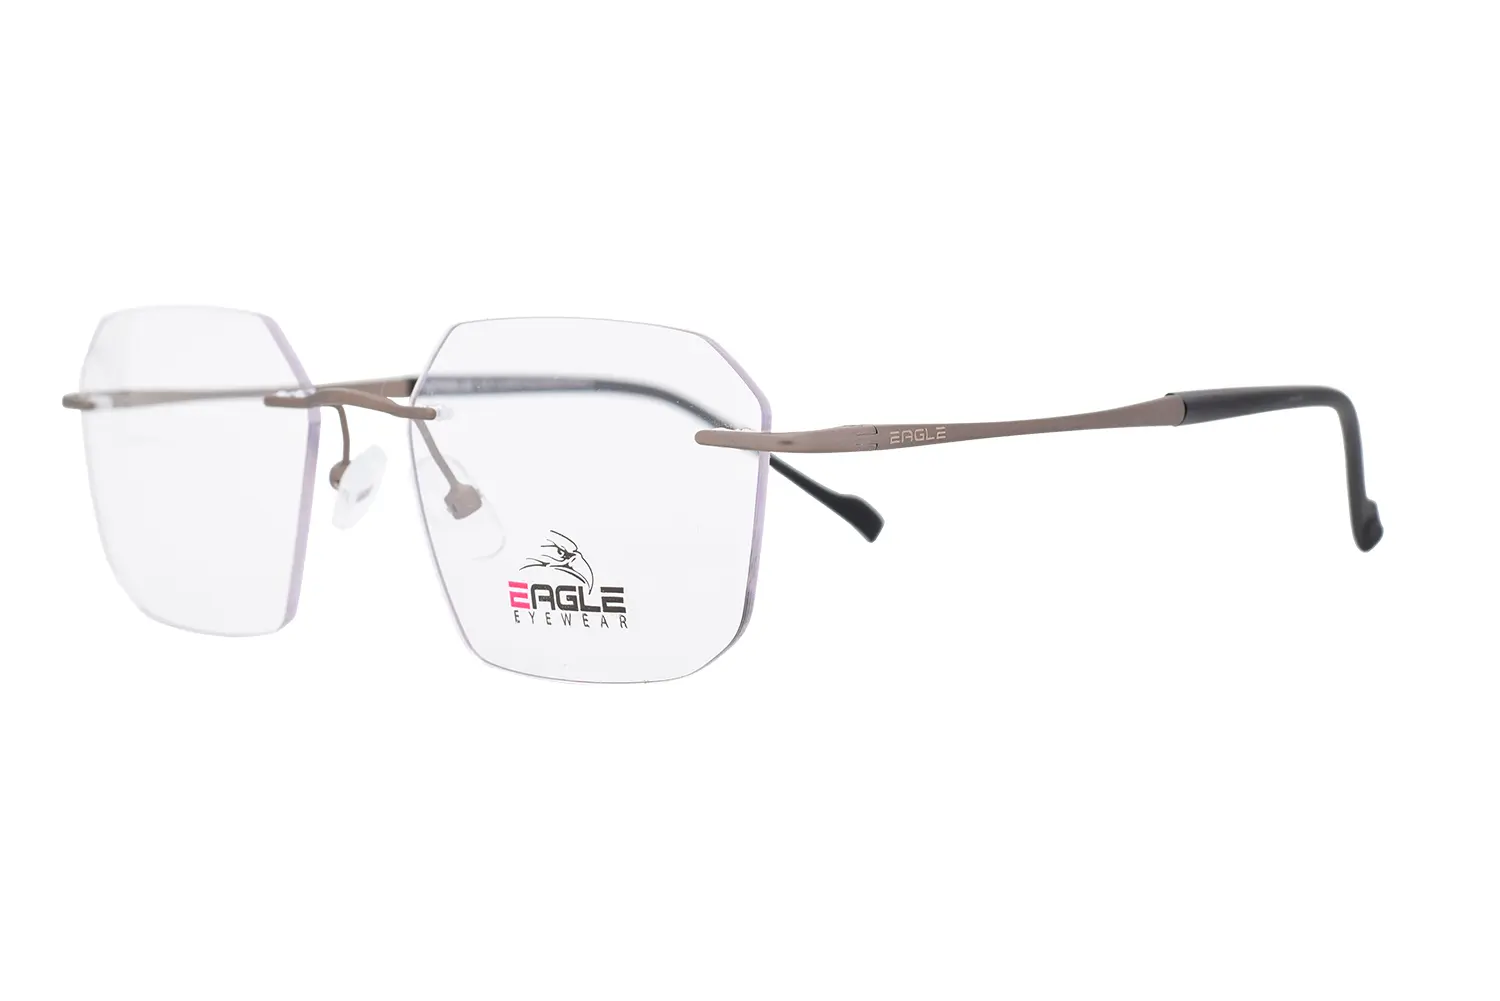  عینک طبی Eagle مدل  OLD5029 C02 - دکترعینک